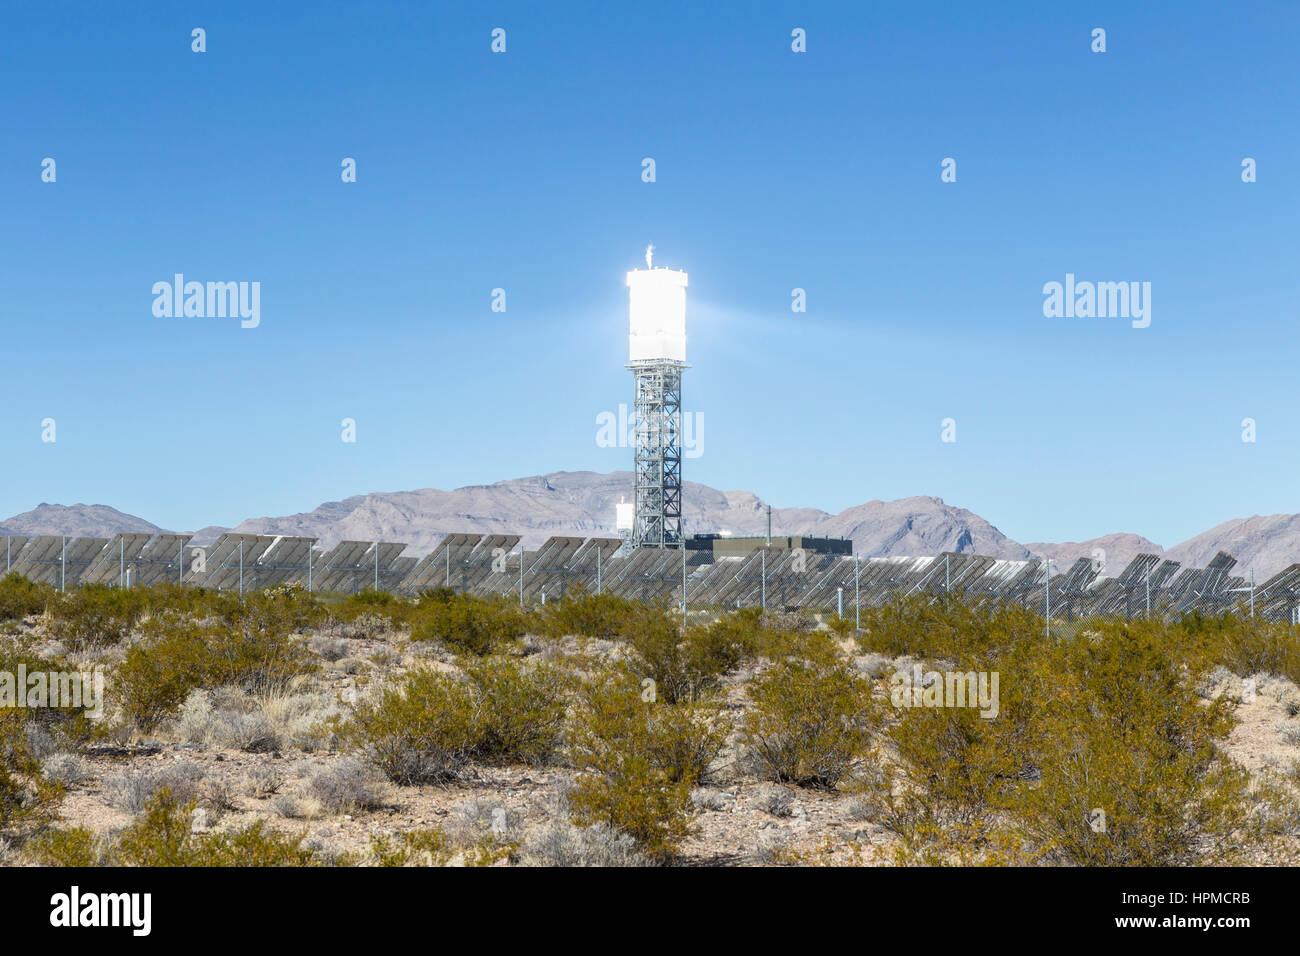 Ivanpah, California, Stati Uniti d'America - 26 Novembre 2014: solare potere riflettente torre all'Ivanpah solar power station nel deserto di Mojave. Foto Stock